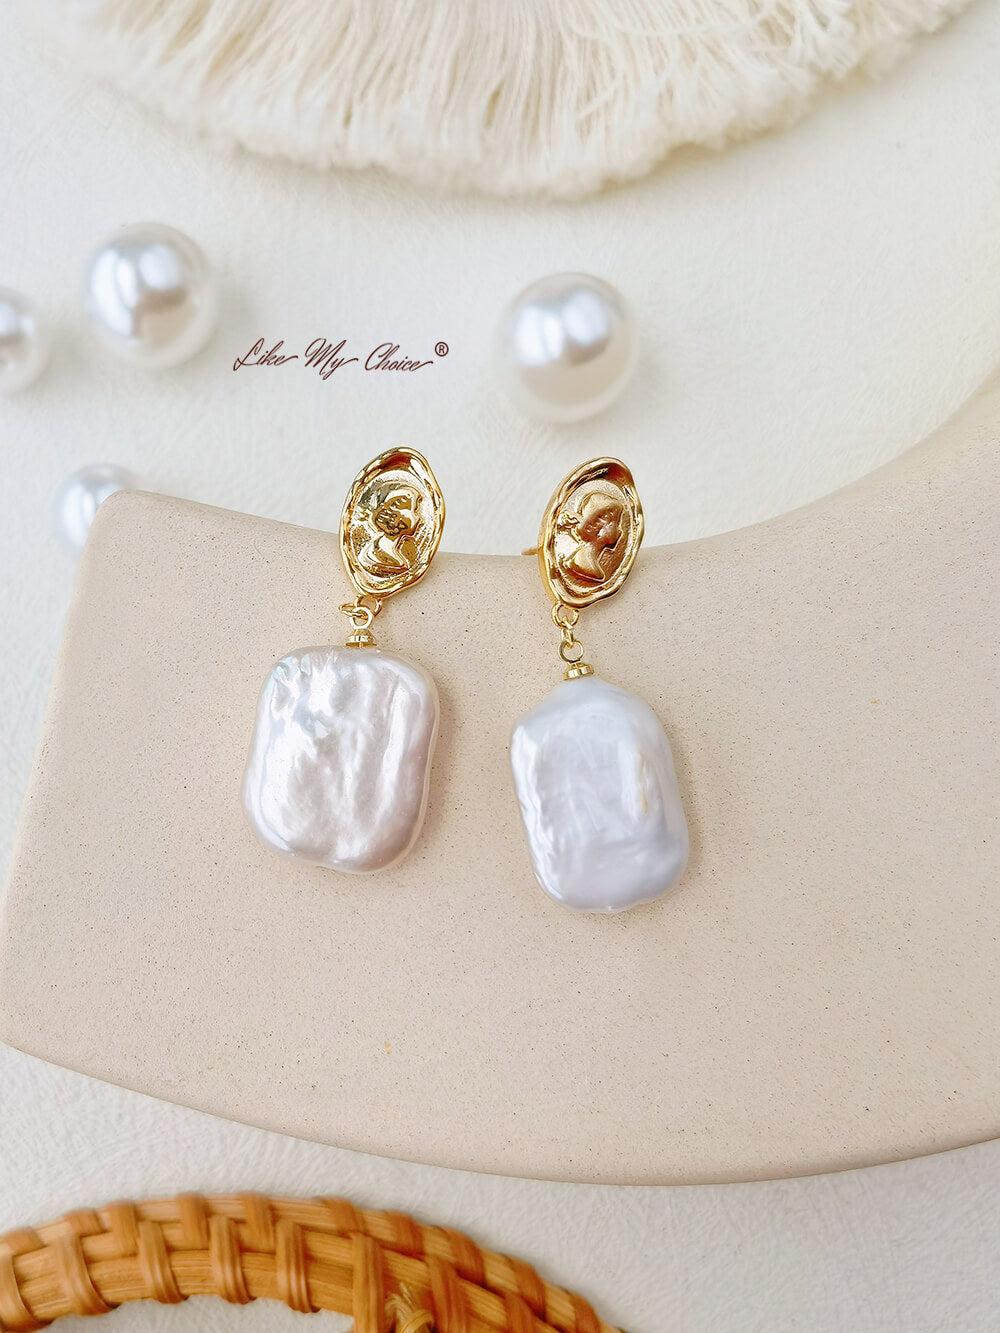 Kolczyki bogini z kamieniami szlachetnymi, perłami słodkowodnymi w stylu vintage: proste i eleganckie